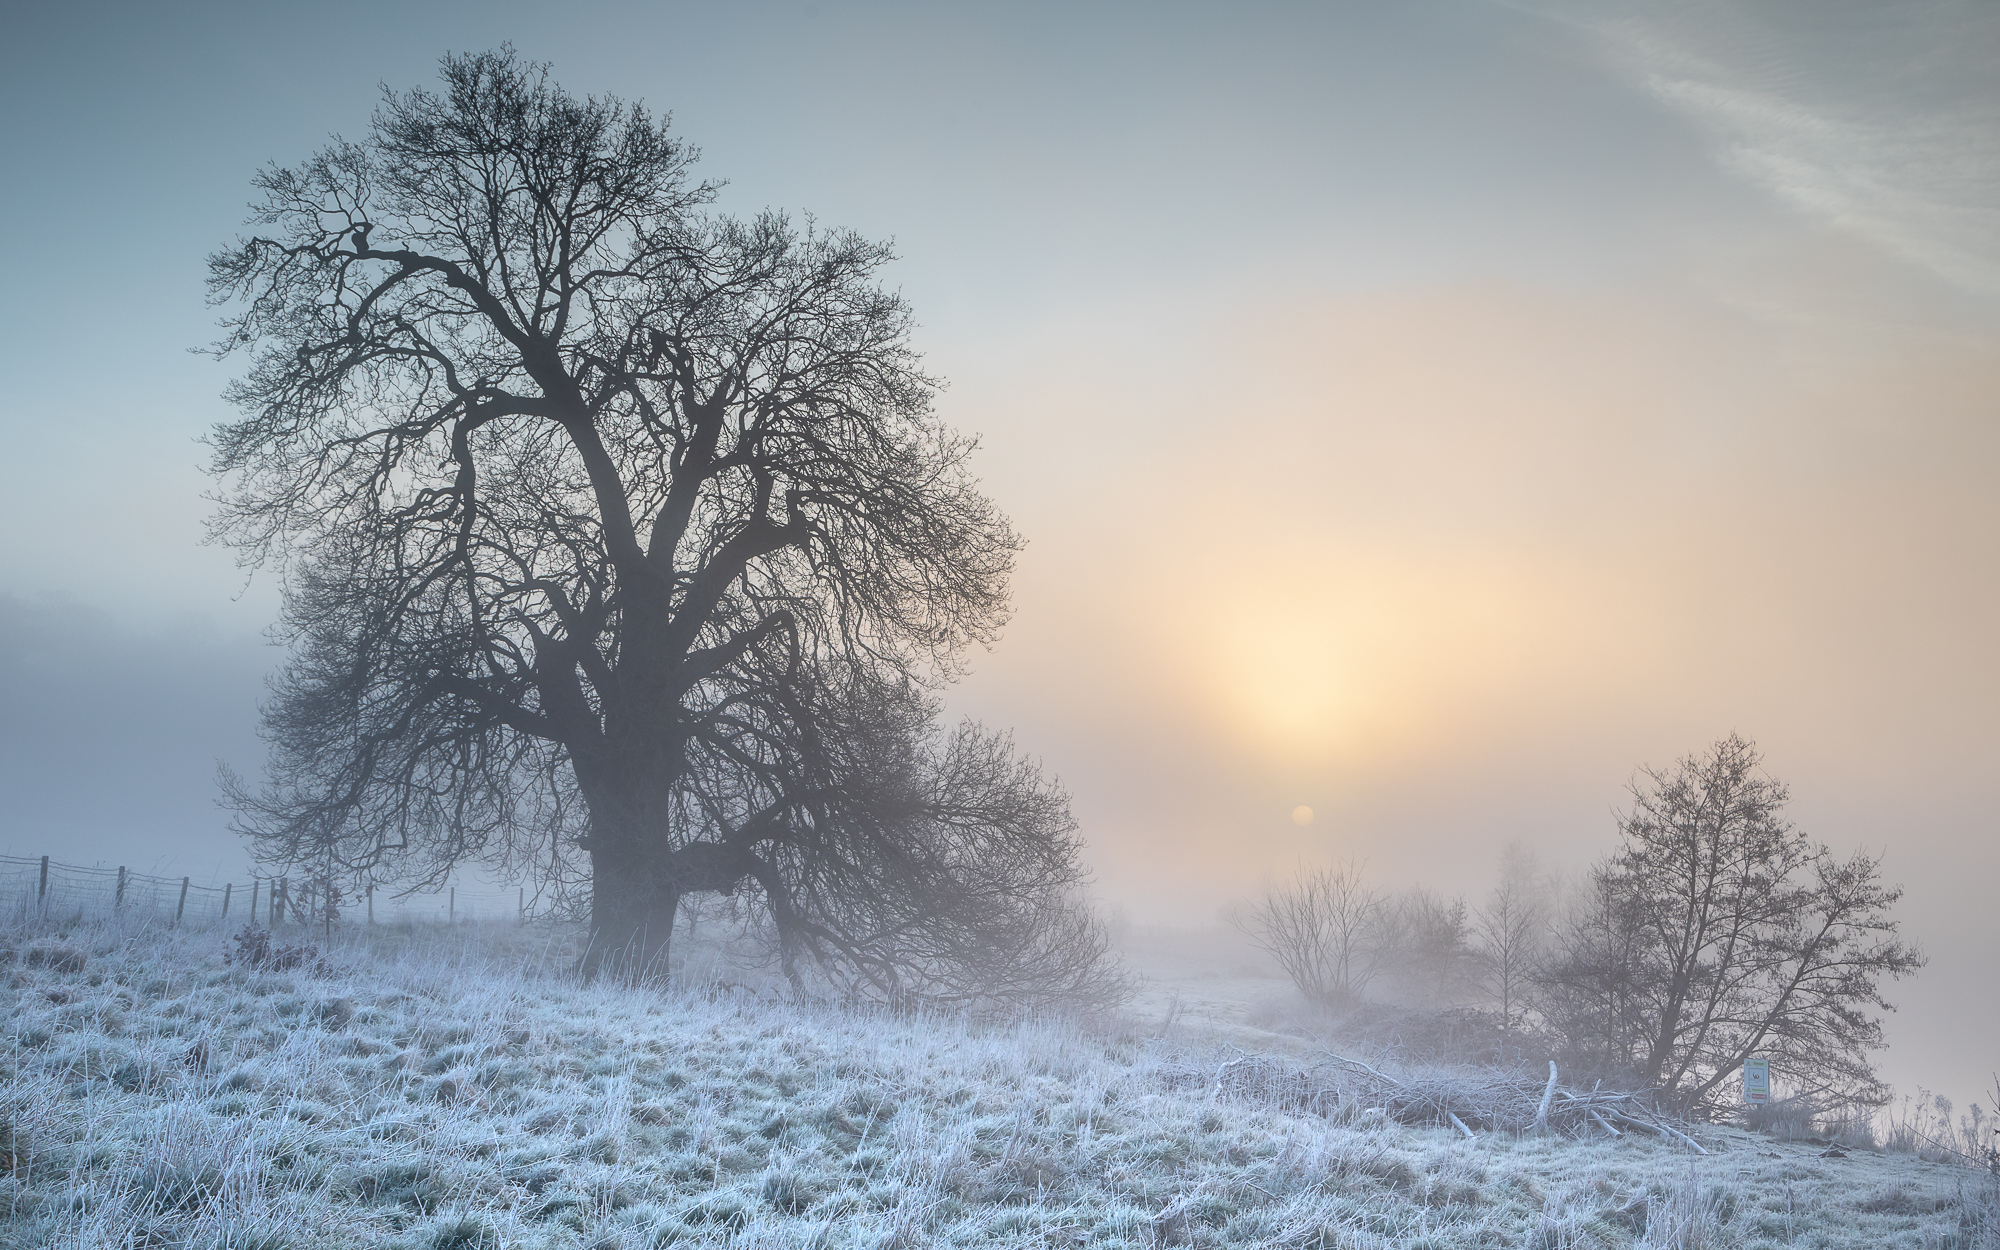 2nd A Winter Sunrise By Steve Baldwin